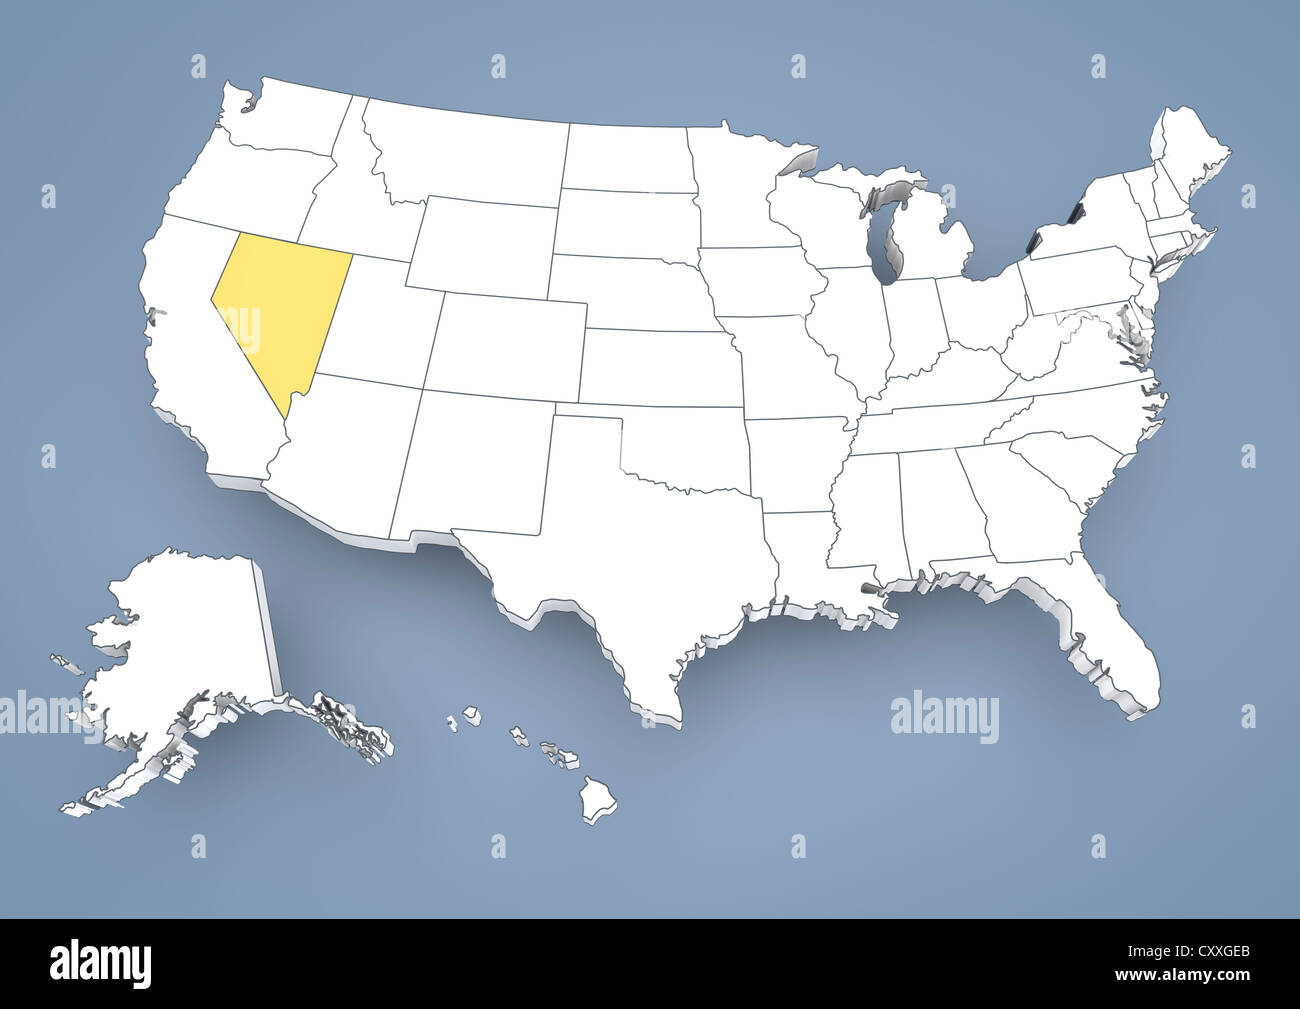 Le Nevada, NV, mis en évidence sur une carte en courbes de USA, United States of America, 3D illustration Banque D'Images